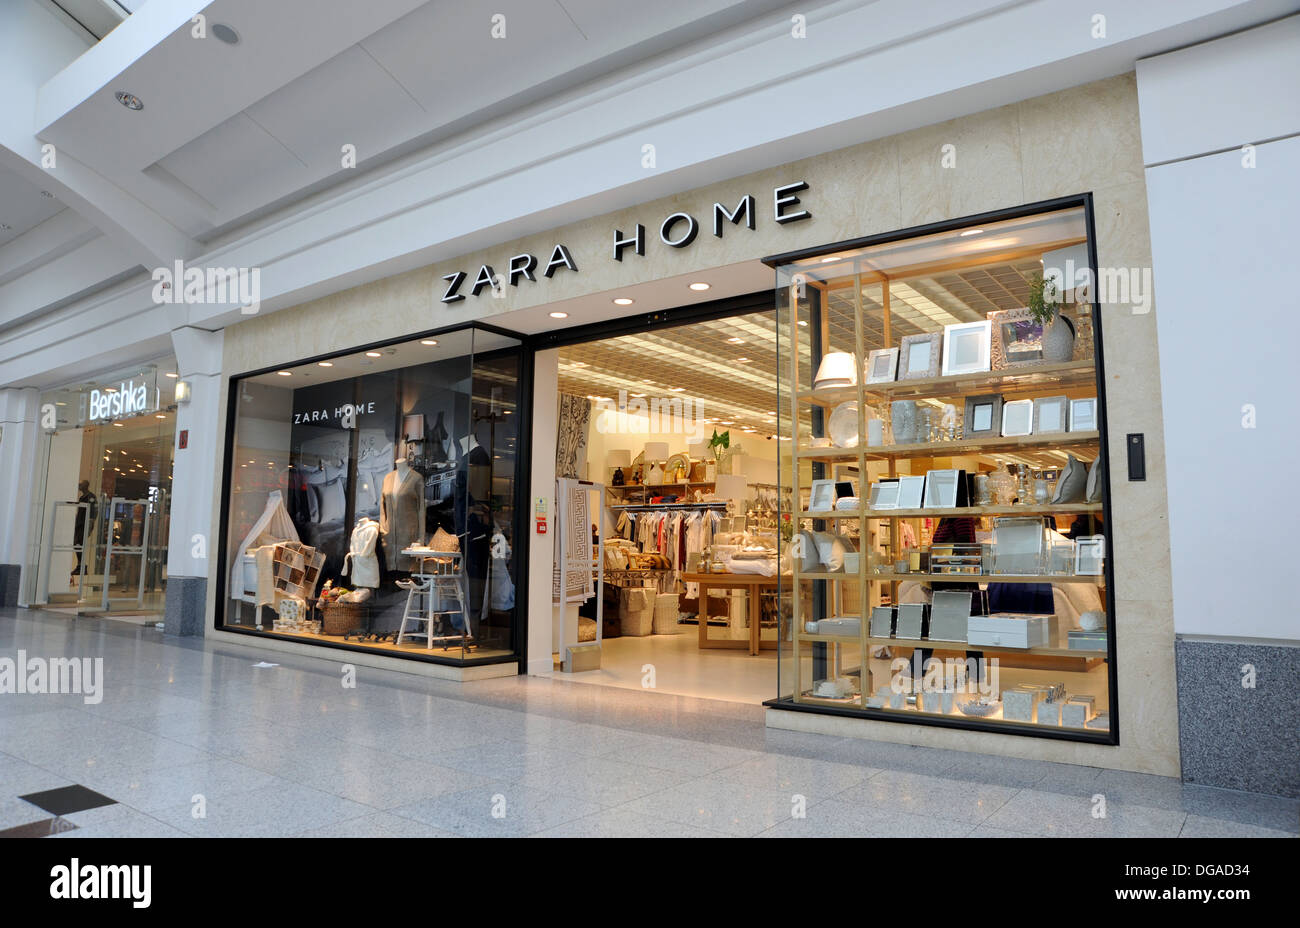 Zara Home store Brighton UK Stock Photo 